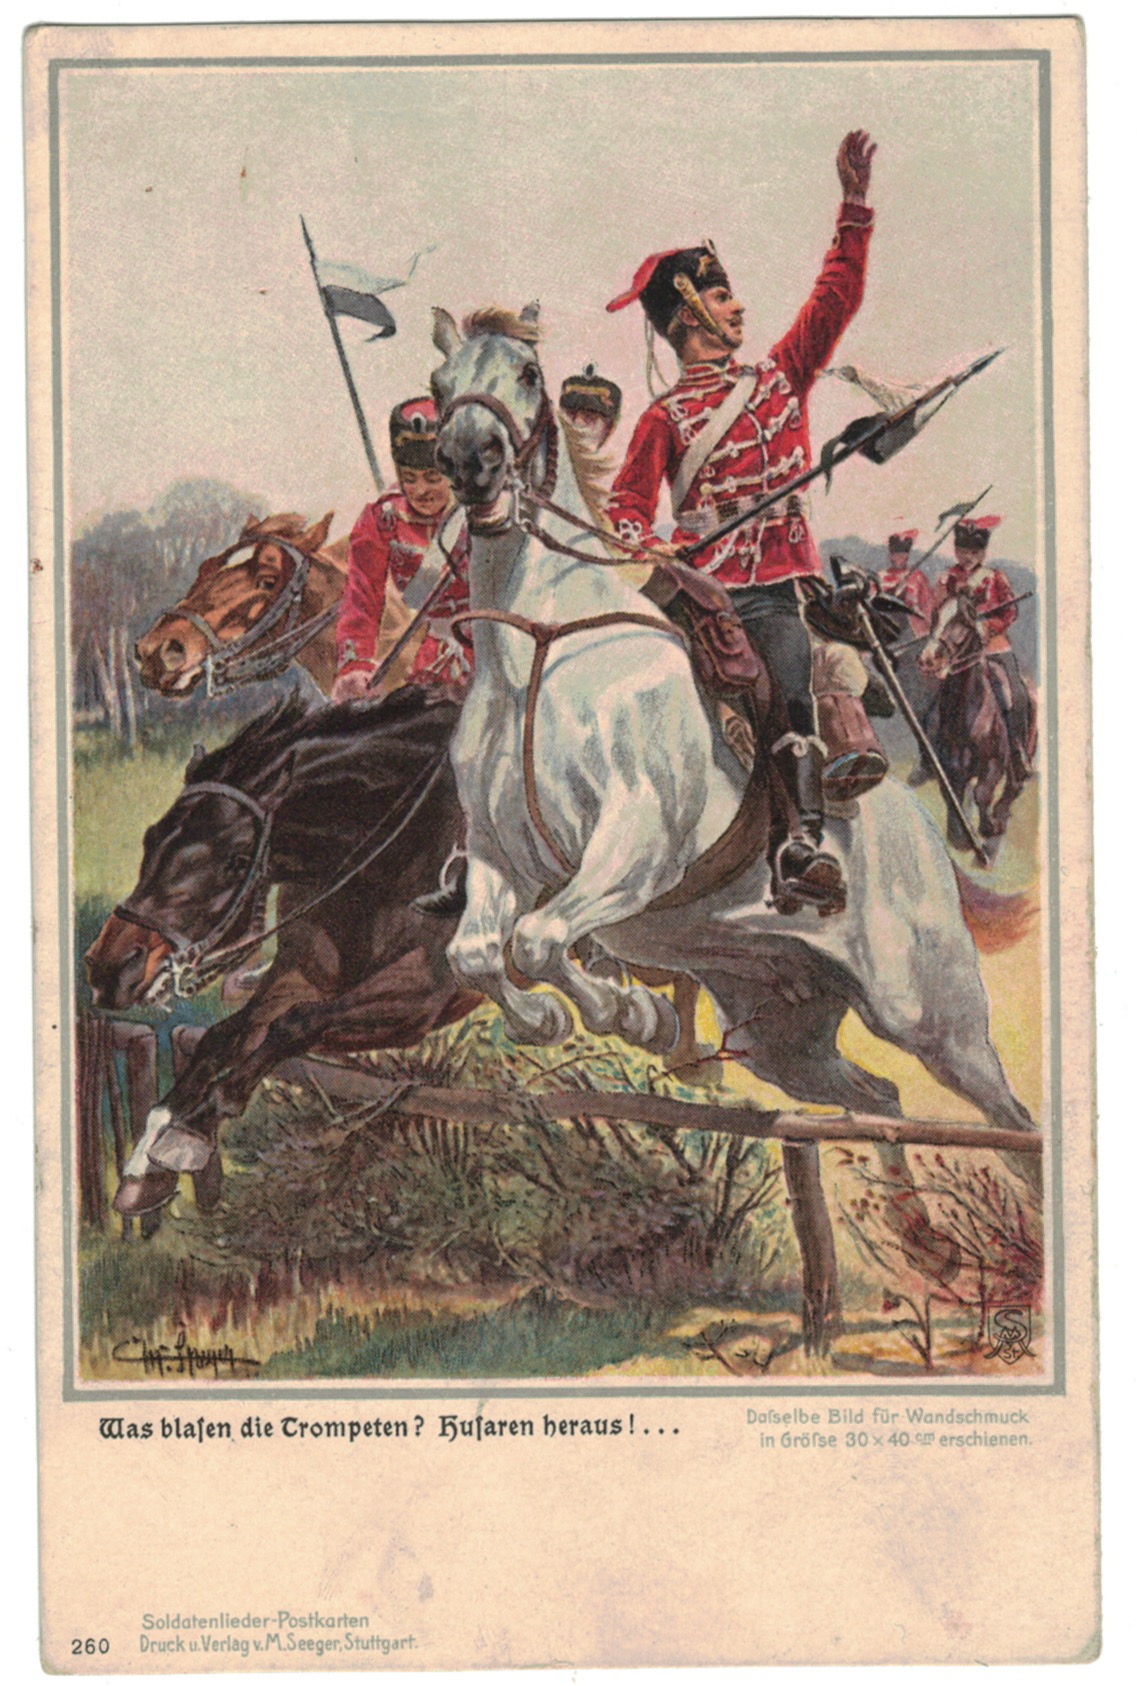 1 Carte Postale - Armée Allemande en campagne - Hussards - Lancier - Soldatenlieder